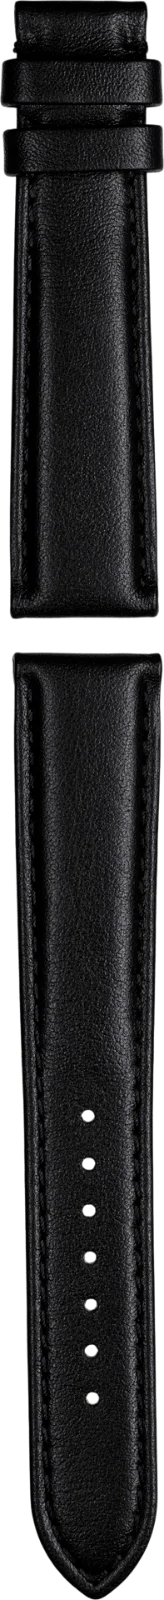 Union Glashütte Kalbsleder-Armband schwarz, Naht Ton in Ton